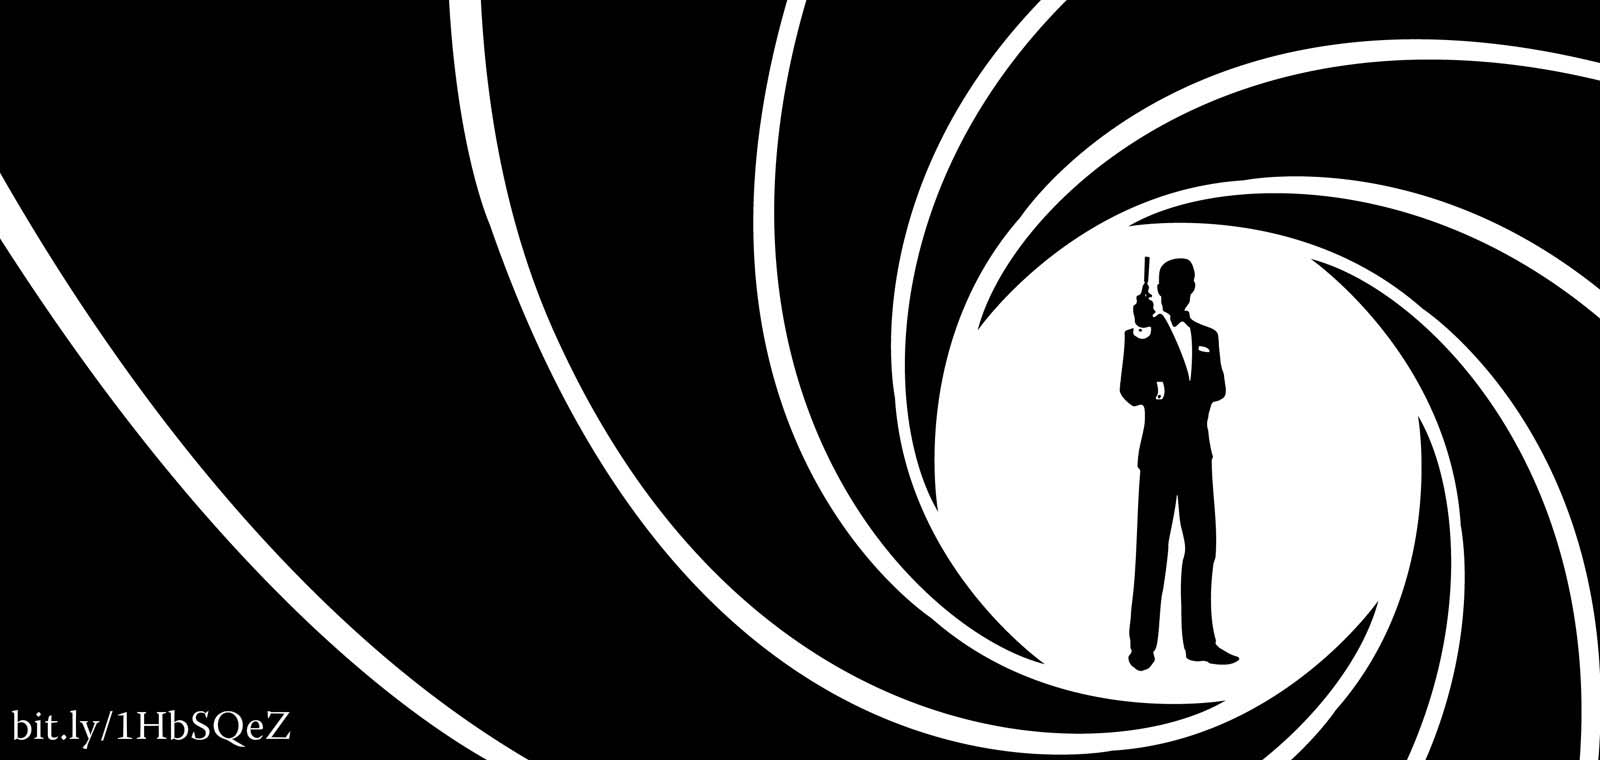 Topp 9 Bond filmer